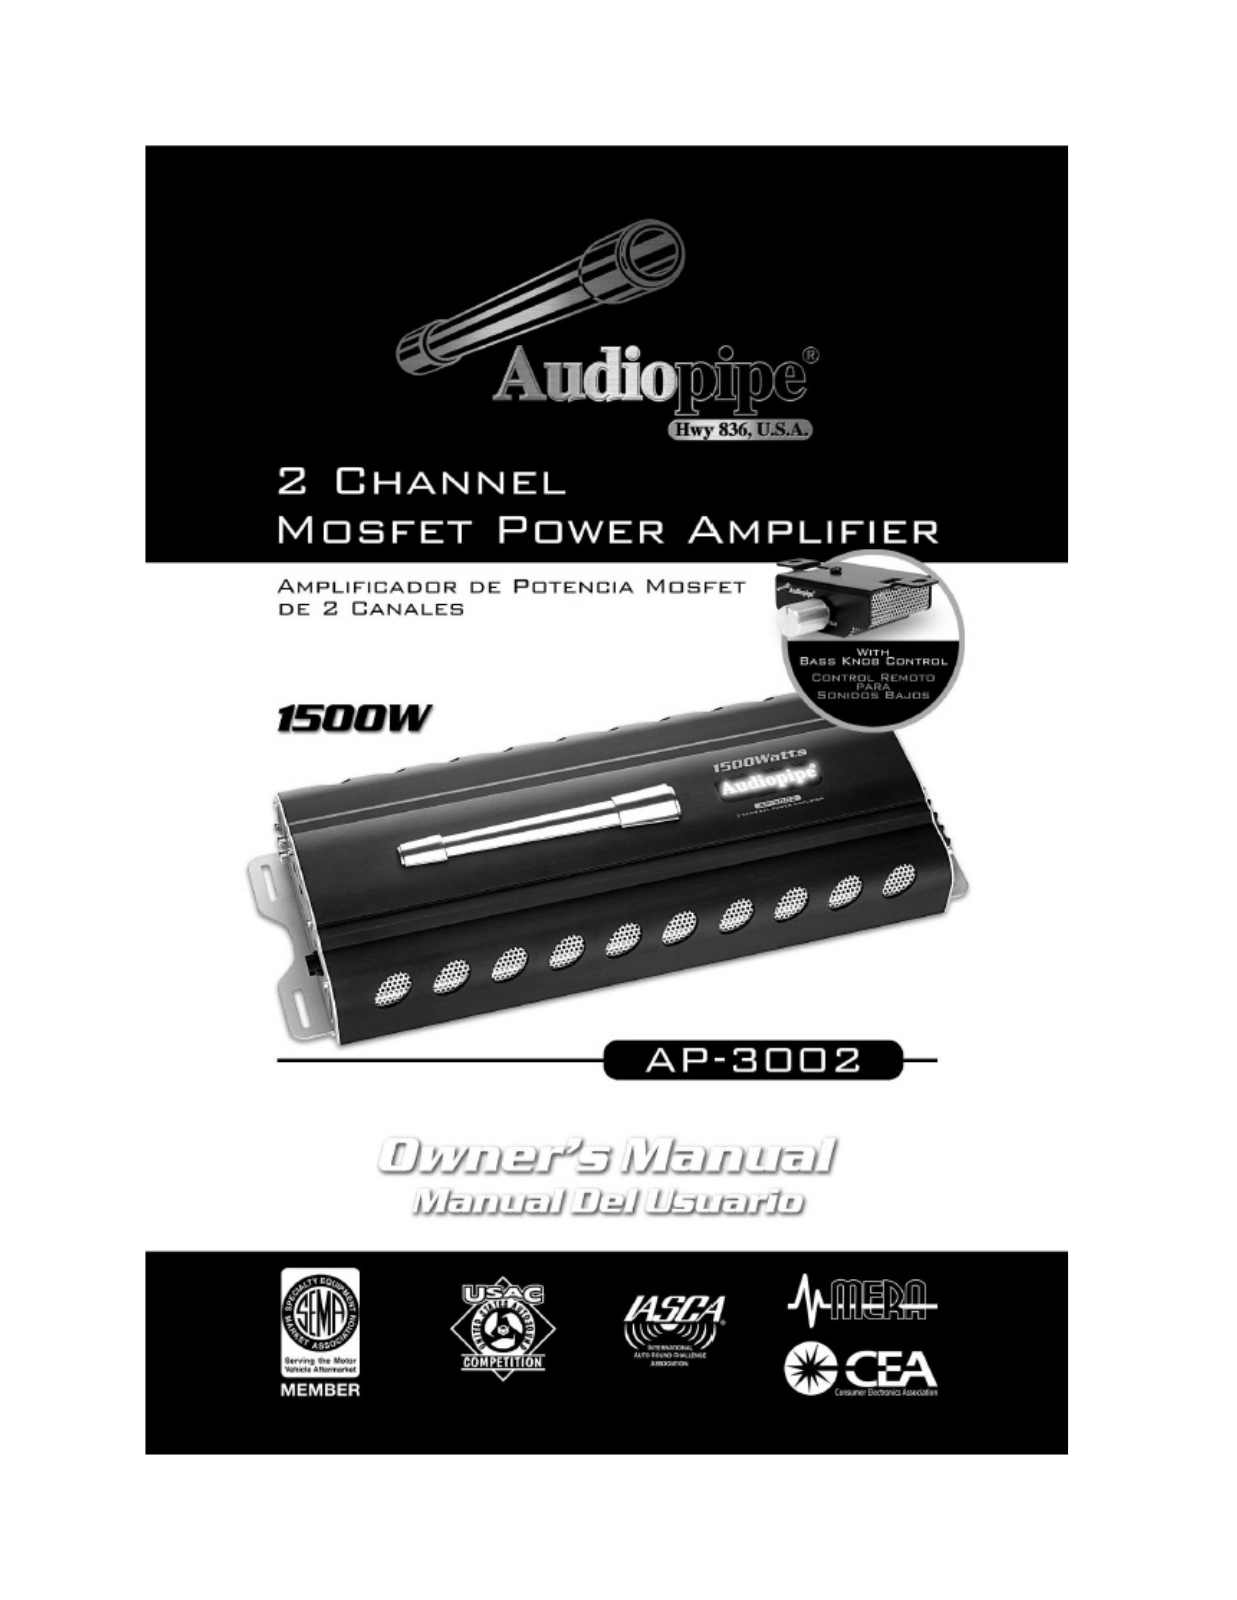 Audiopipe AP-3002 Owners Manual